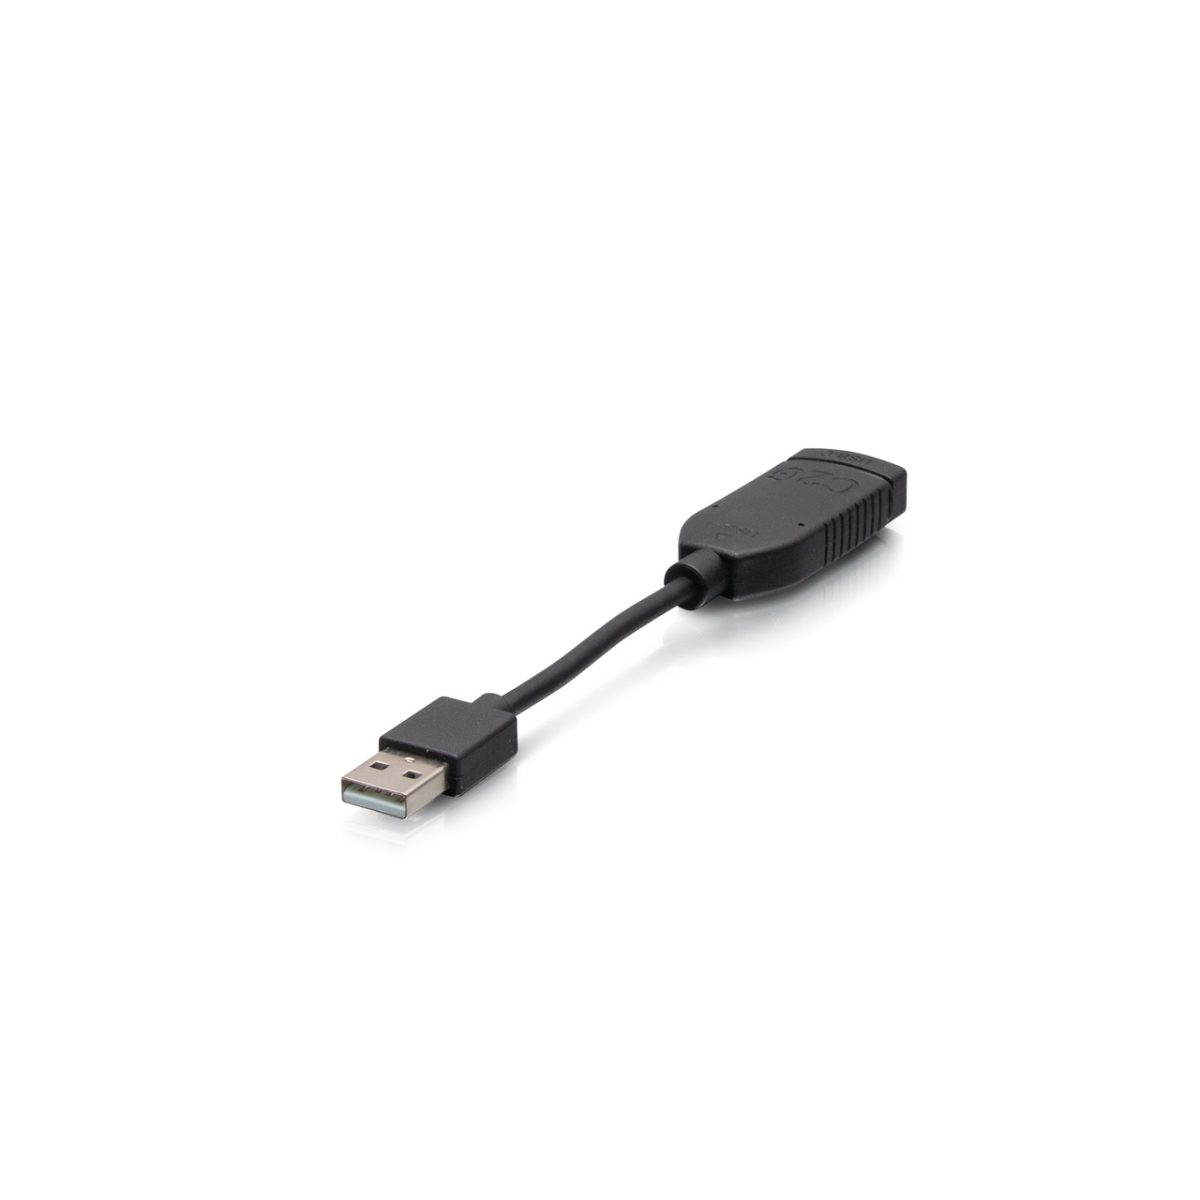 Picture of C2G C2G30062 USB C Male to USB A Female Cable Adapter